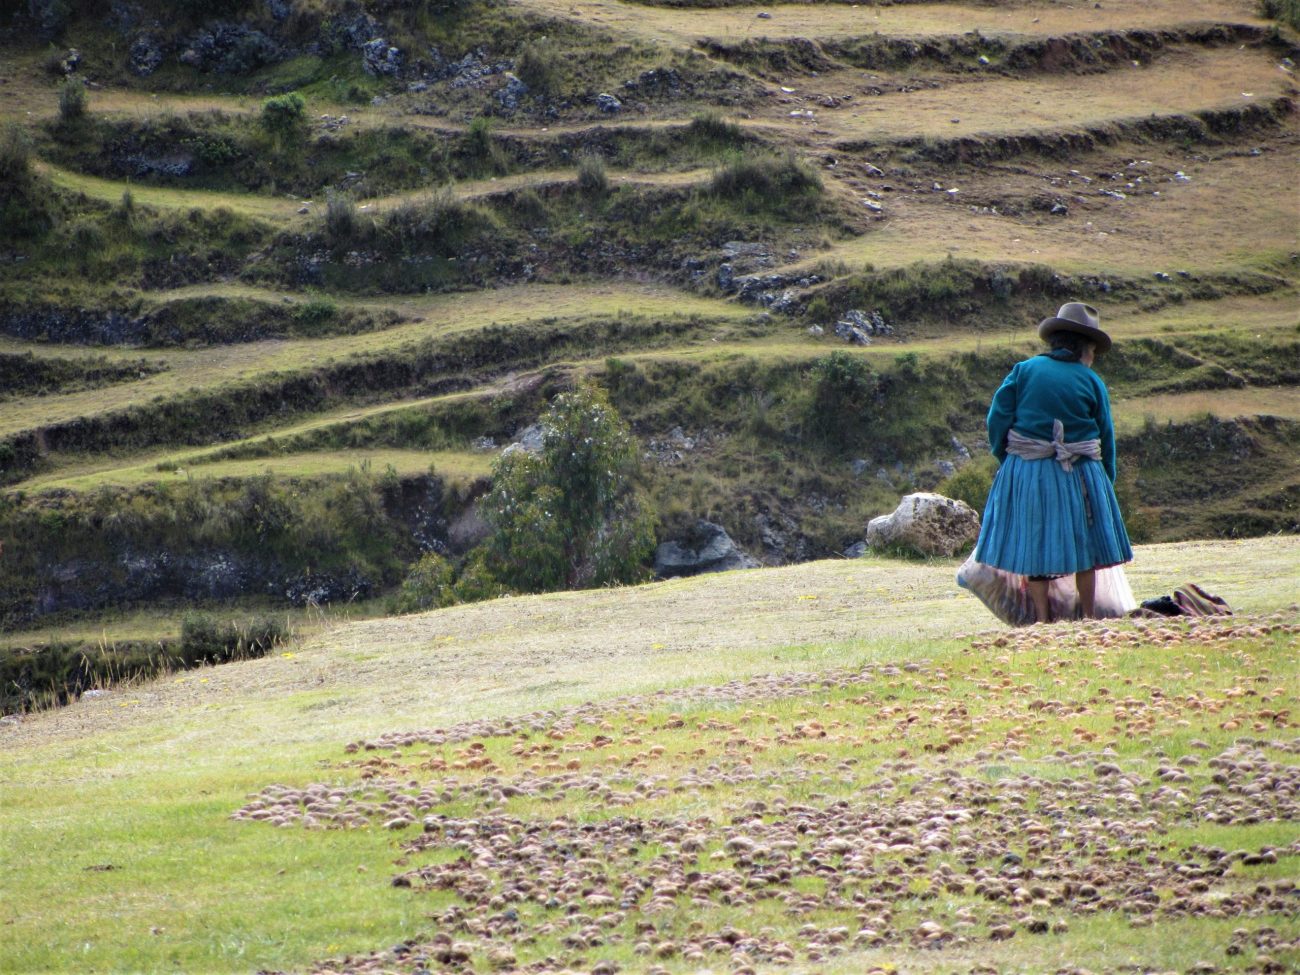 Posvátné údolí Inků